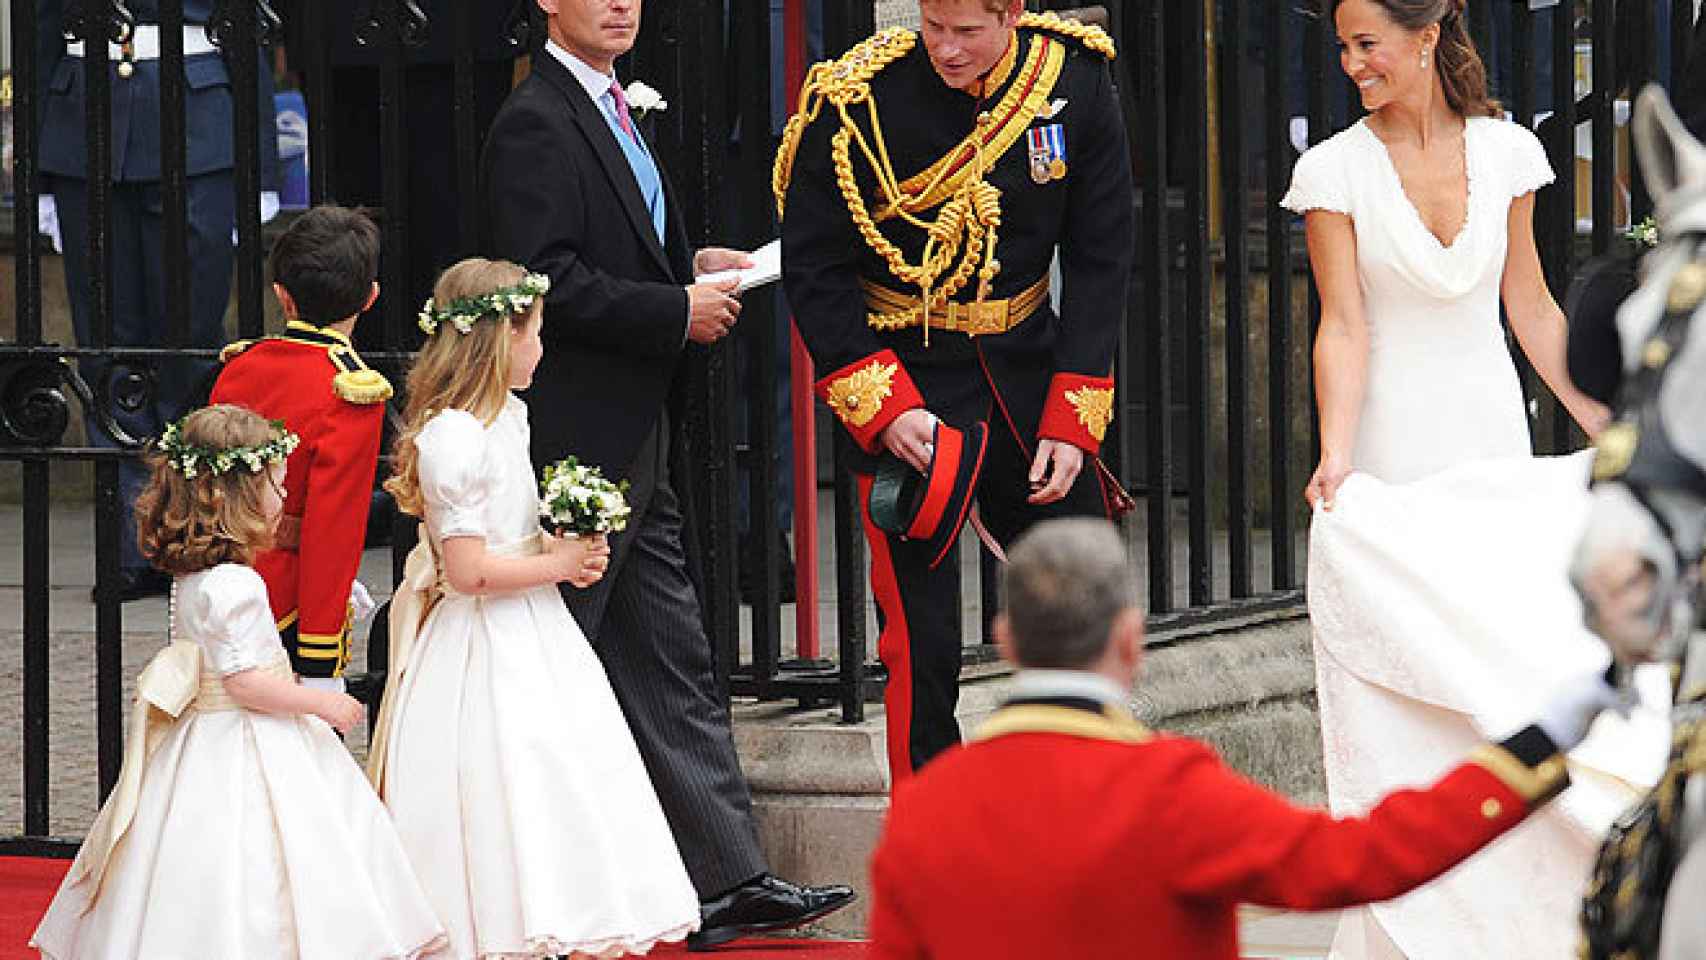 Harry en la boda de su hermano y Kate, junto a Pippa Middleton.